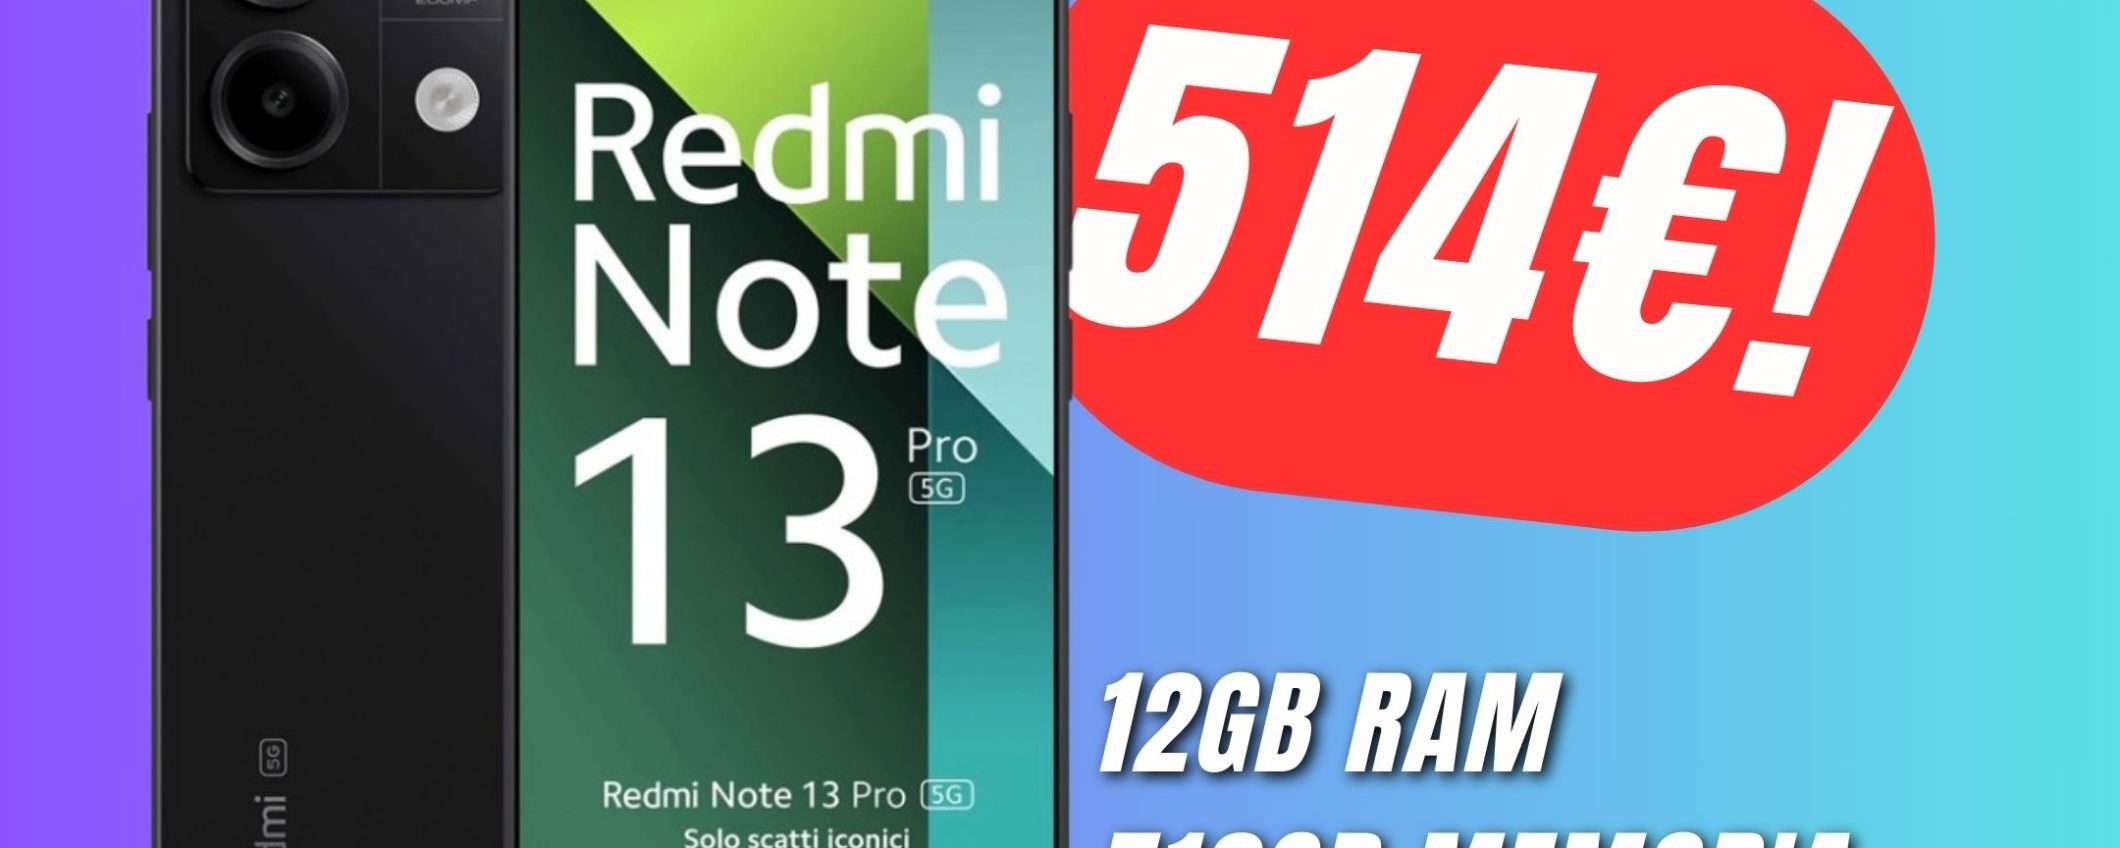 Redmi Note 13 Pro 5G sarà il tuo prossimo smartphone grazie al COUPON!